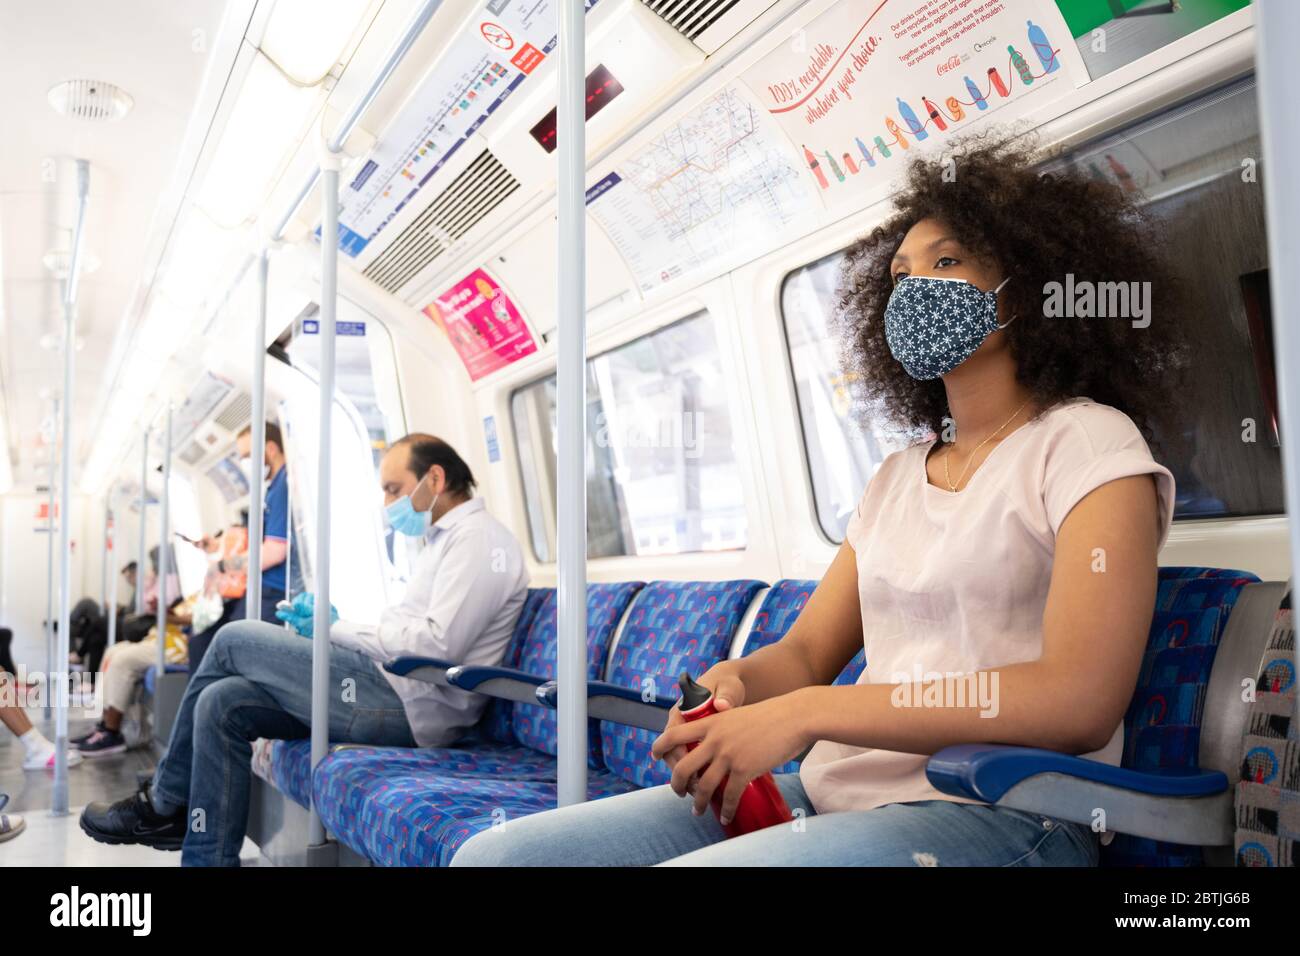 Les personnes qui voyagent pour la ville portent des revêtements faciaux et transportent des bouteilles d'eau dans le métro de Londres lorsqu'elles retournent au travail. Mai 2020 Banque D'Images